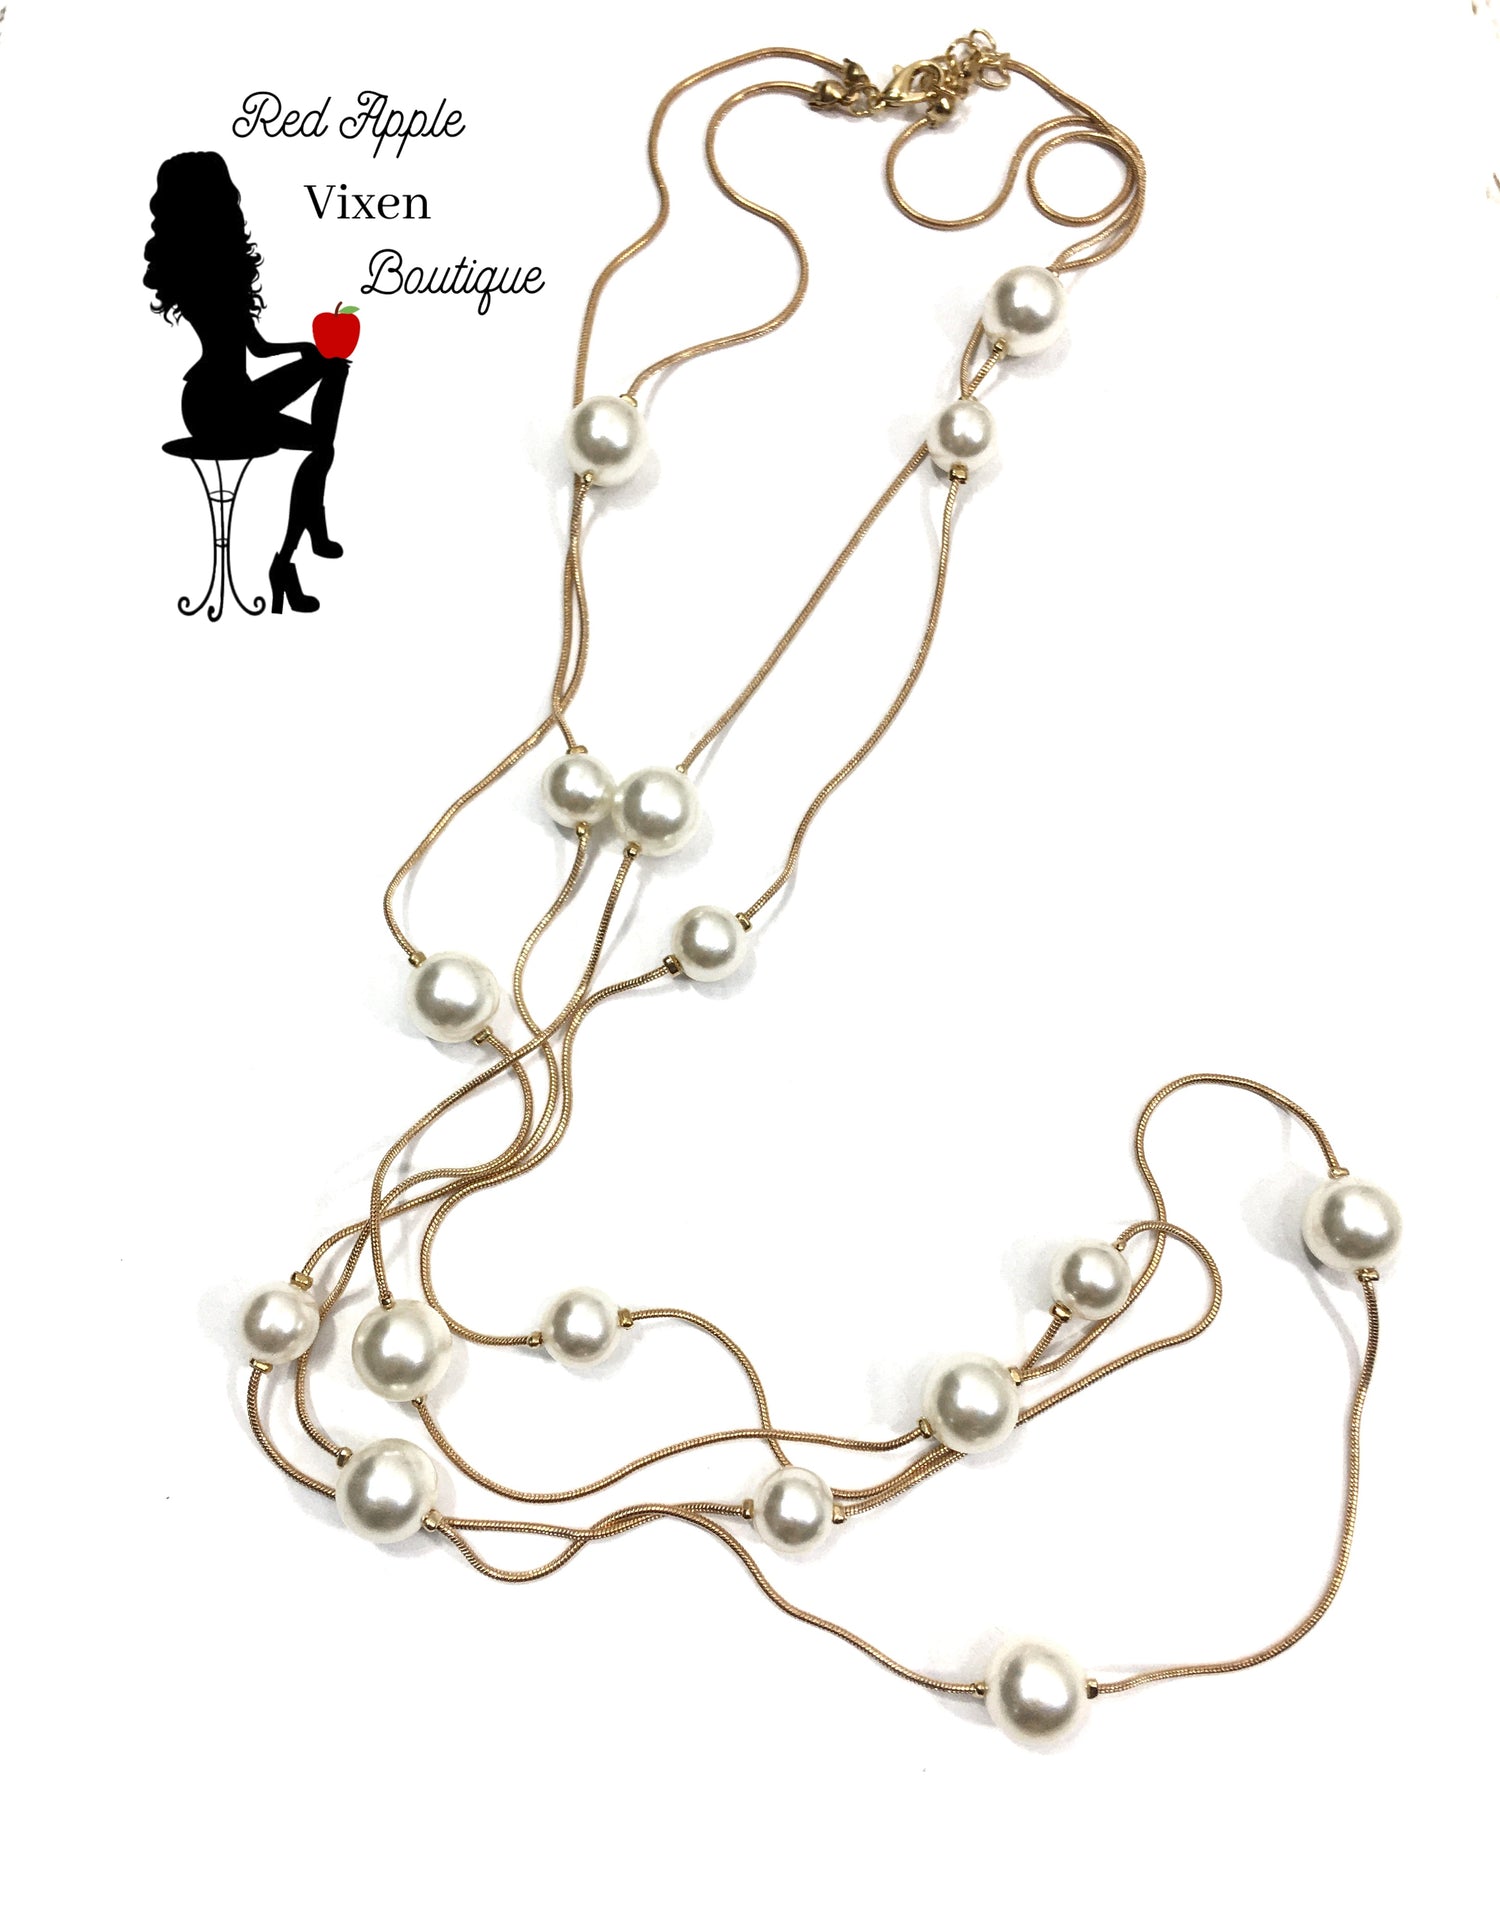 Gold Pendant Pearl Necklace - Red Apple Vixen Boutique